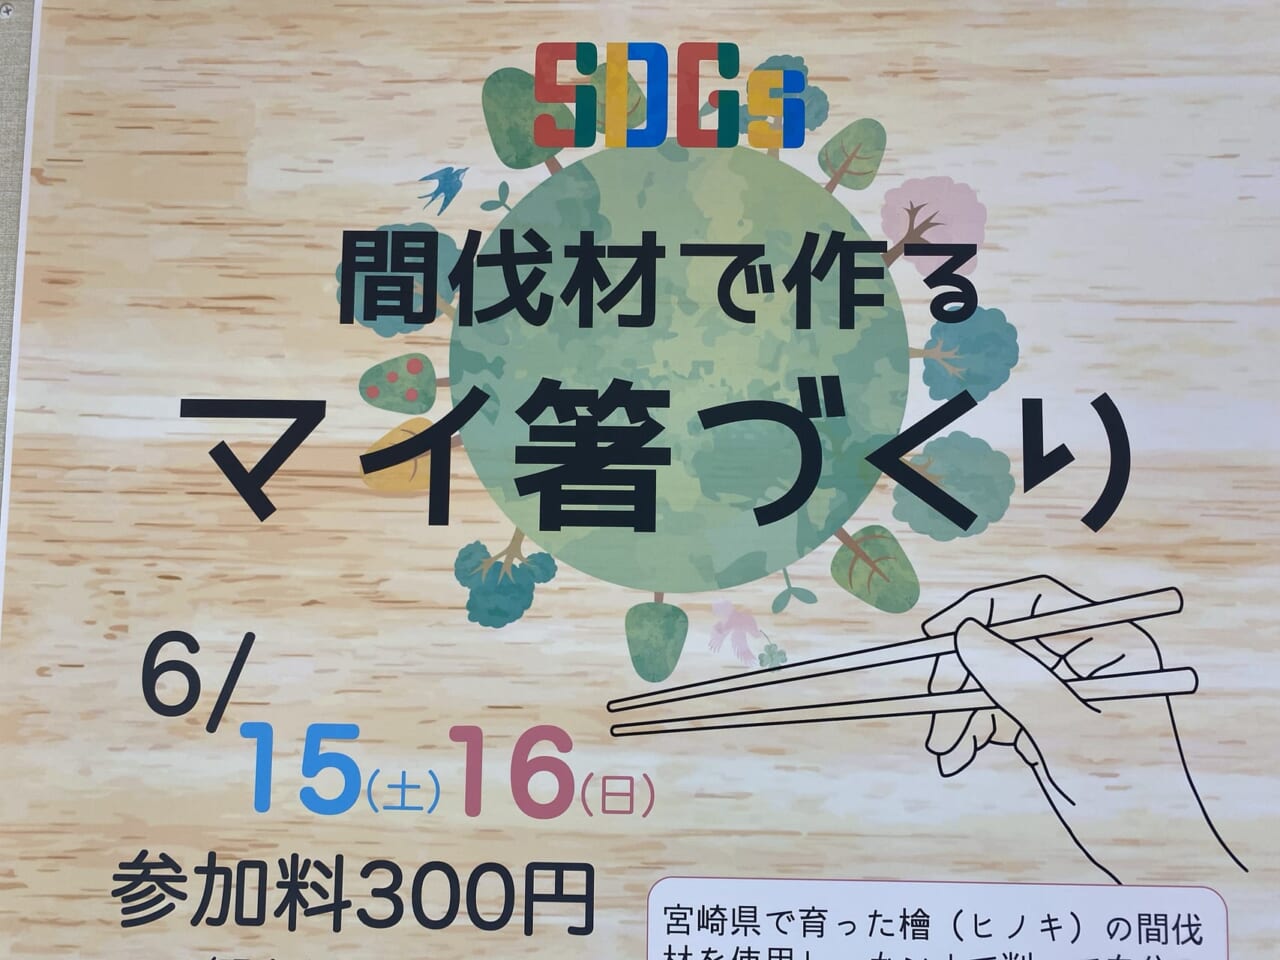 宮崎市イベント イオンモール宮崎 ヒナタコート SDGs間伐材でつくるマイ箸づくり 画像2